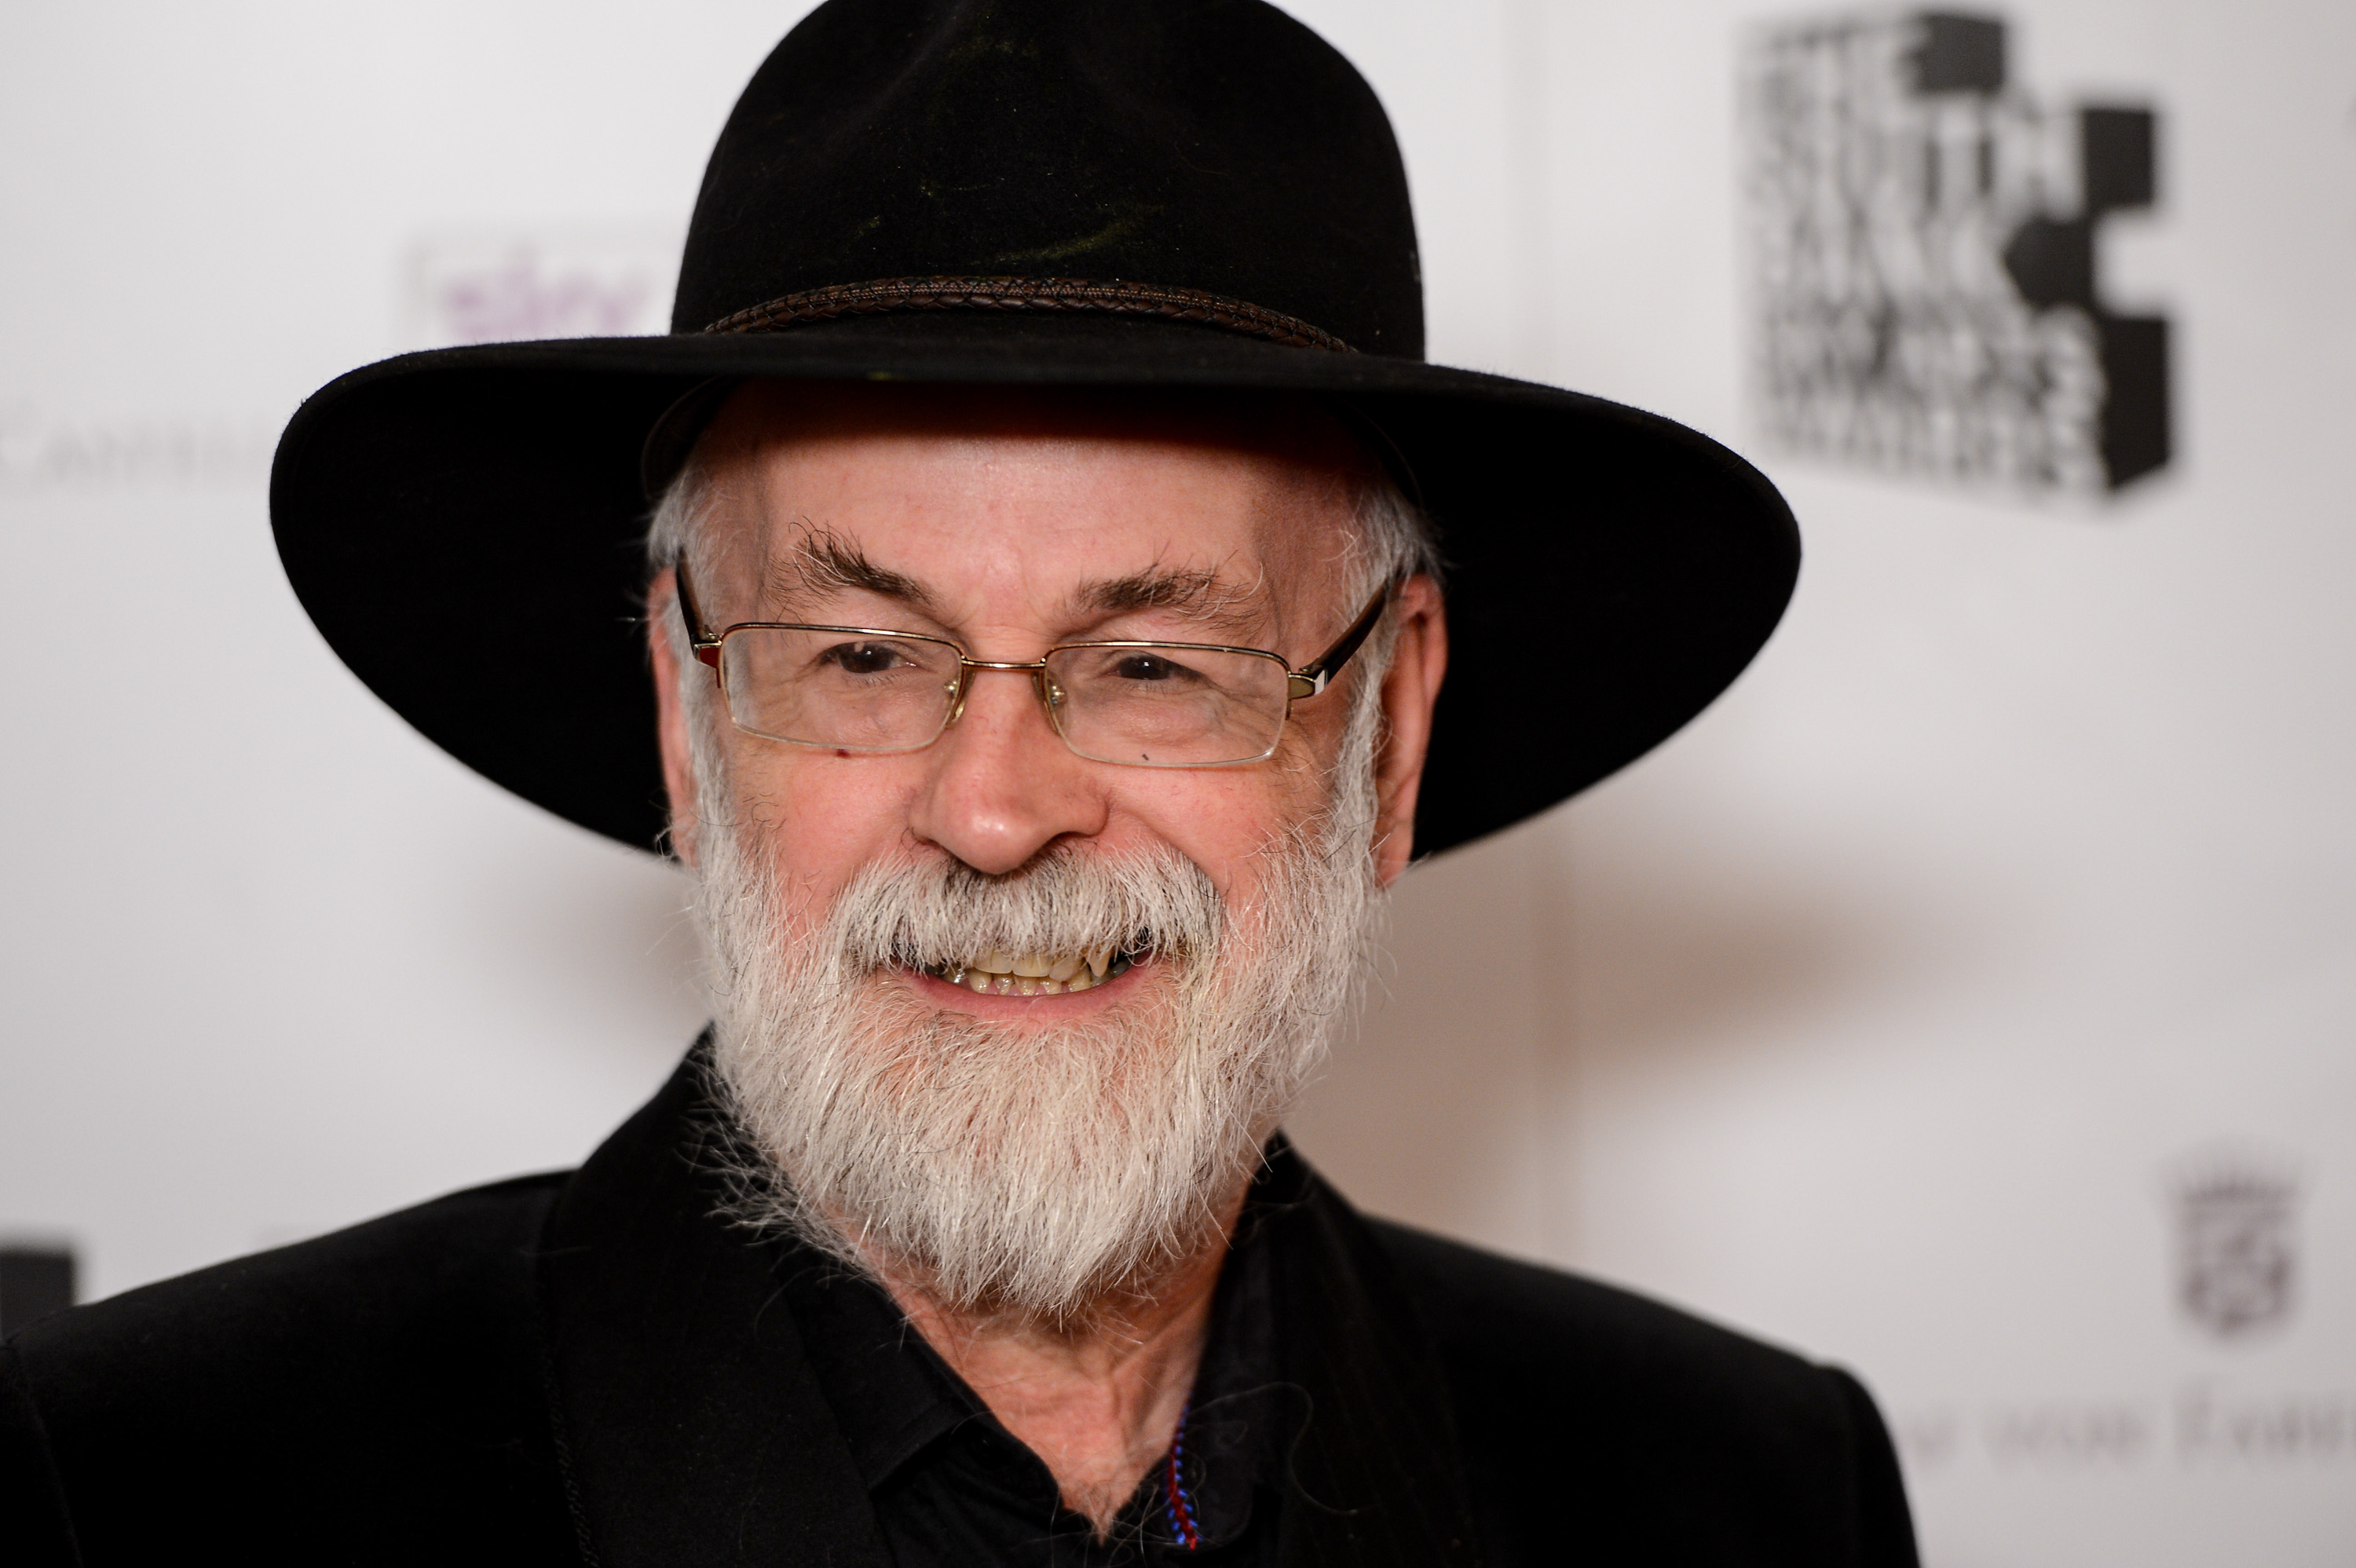 Fantasy author Terry Pratchett dies at 66 - CBS News